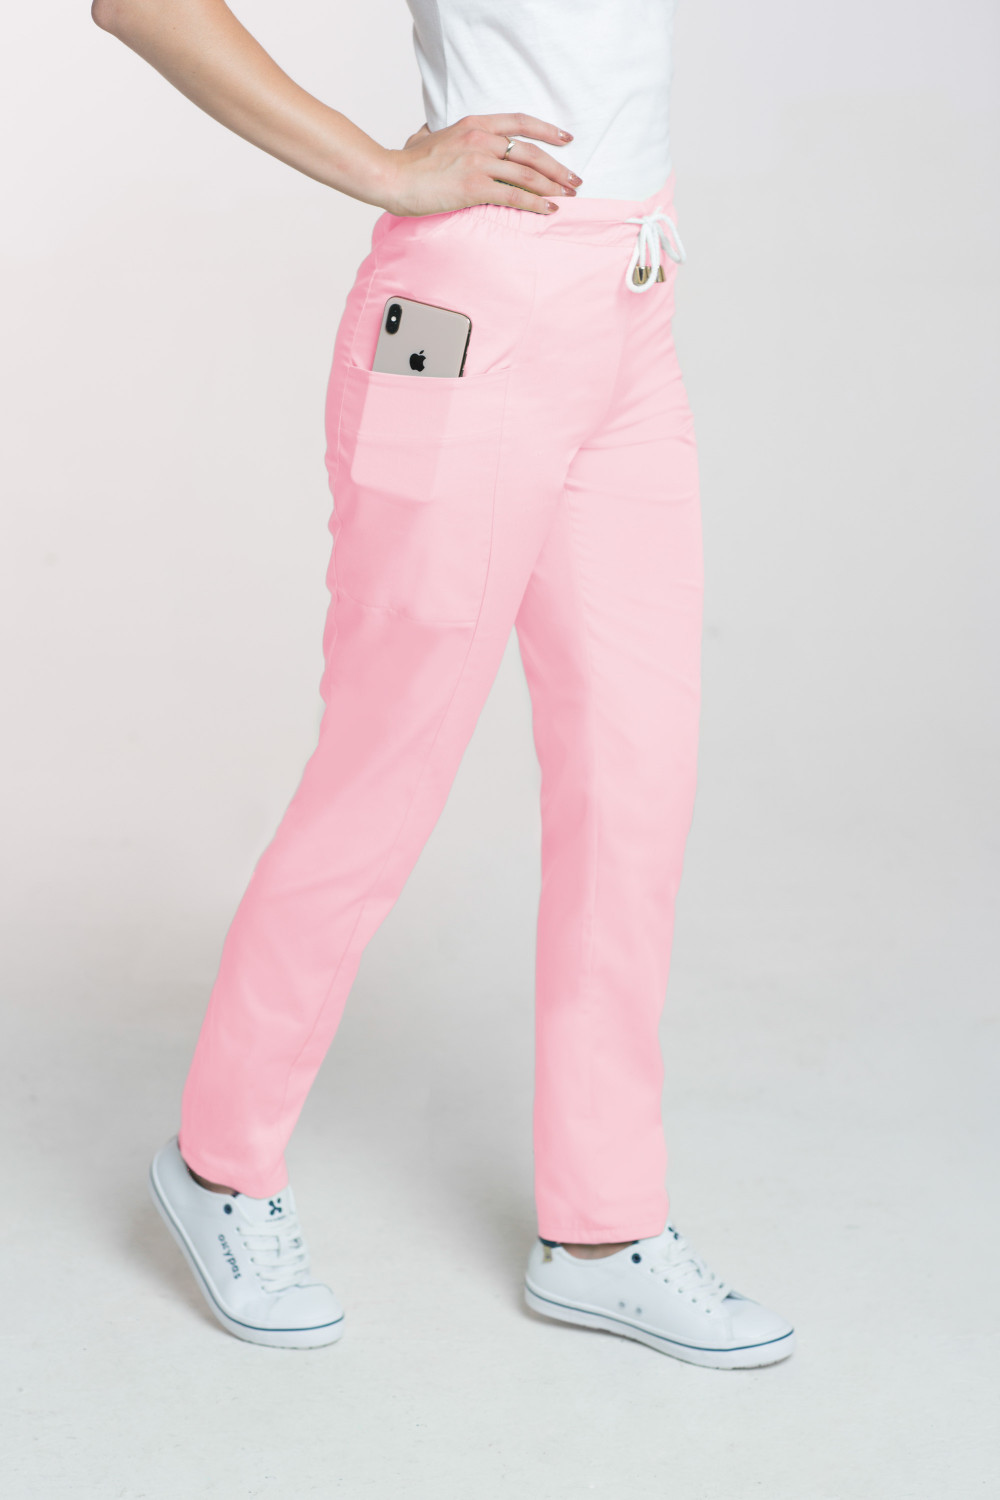 Spodnie medyczne damskie M-200 - pudrowy róż